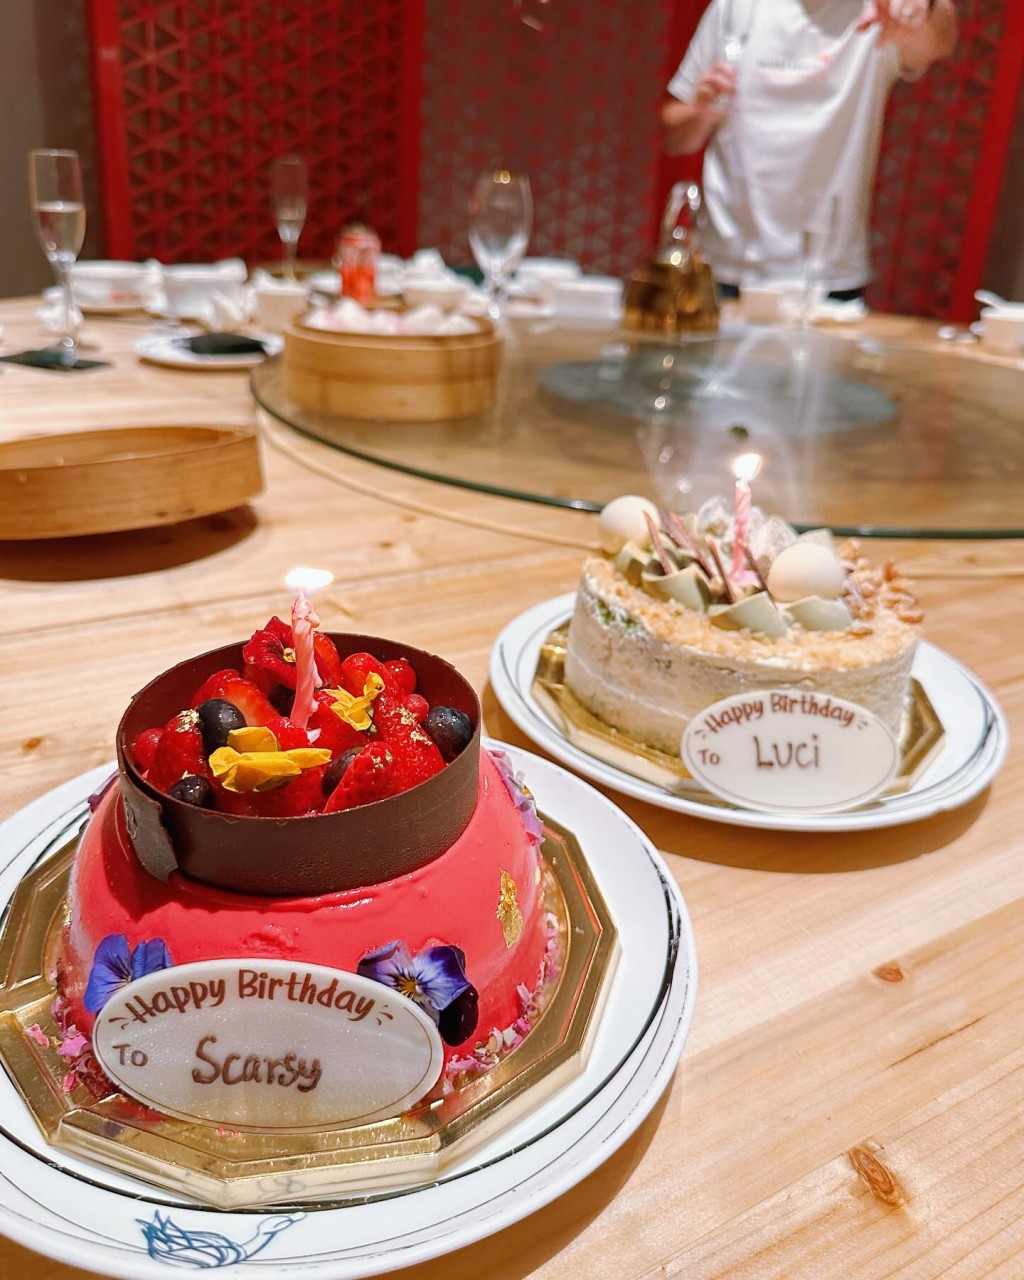 兩位壽星一人一個蛋糕。